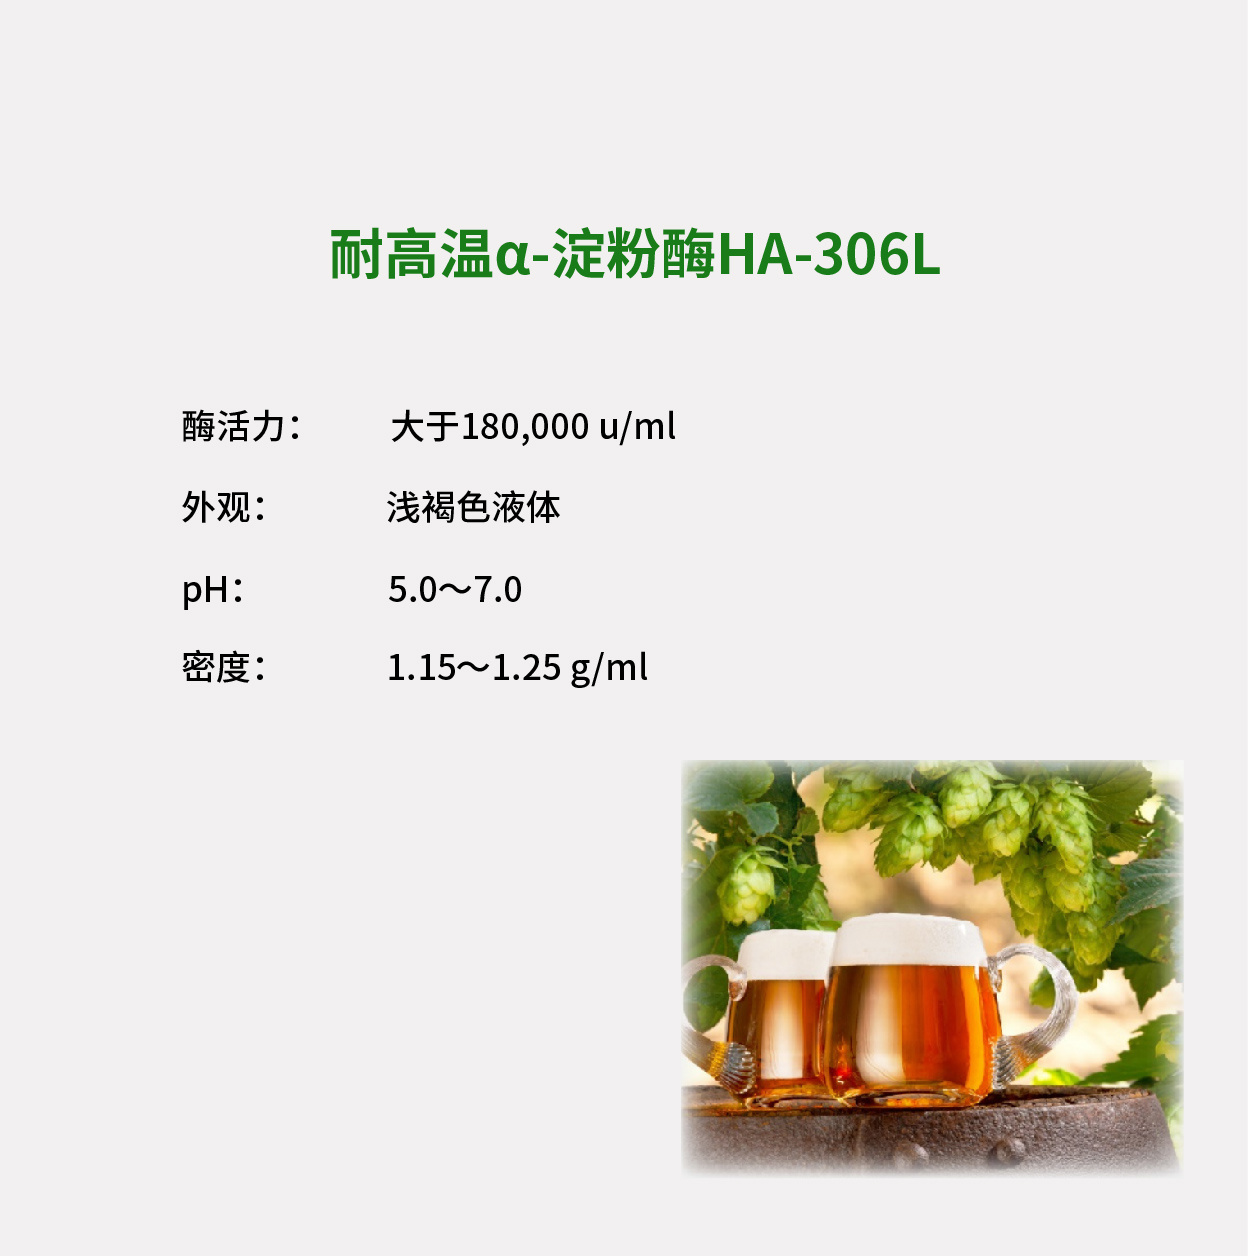 高效α-淀粉酶HA-306L